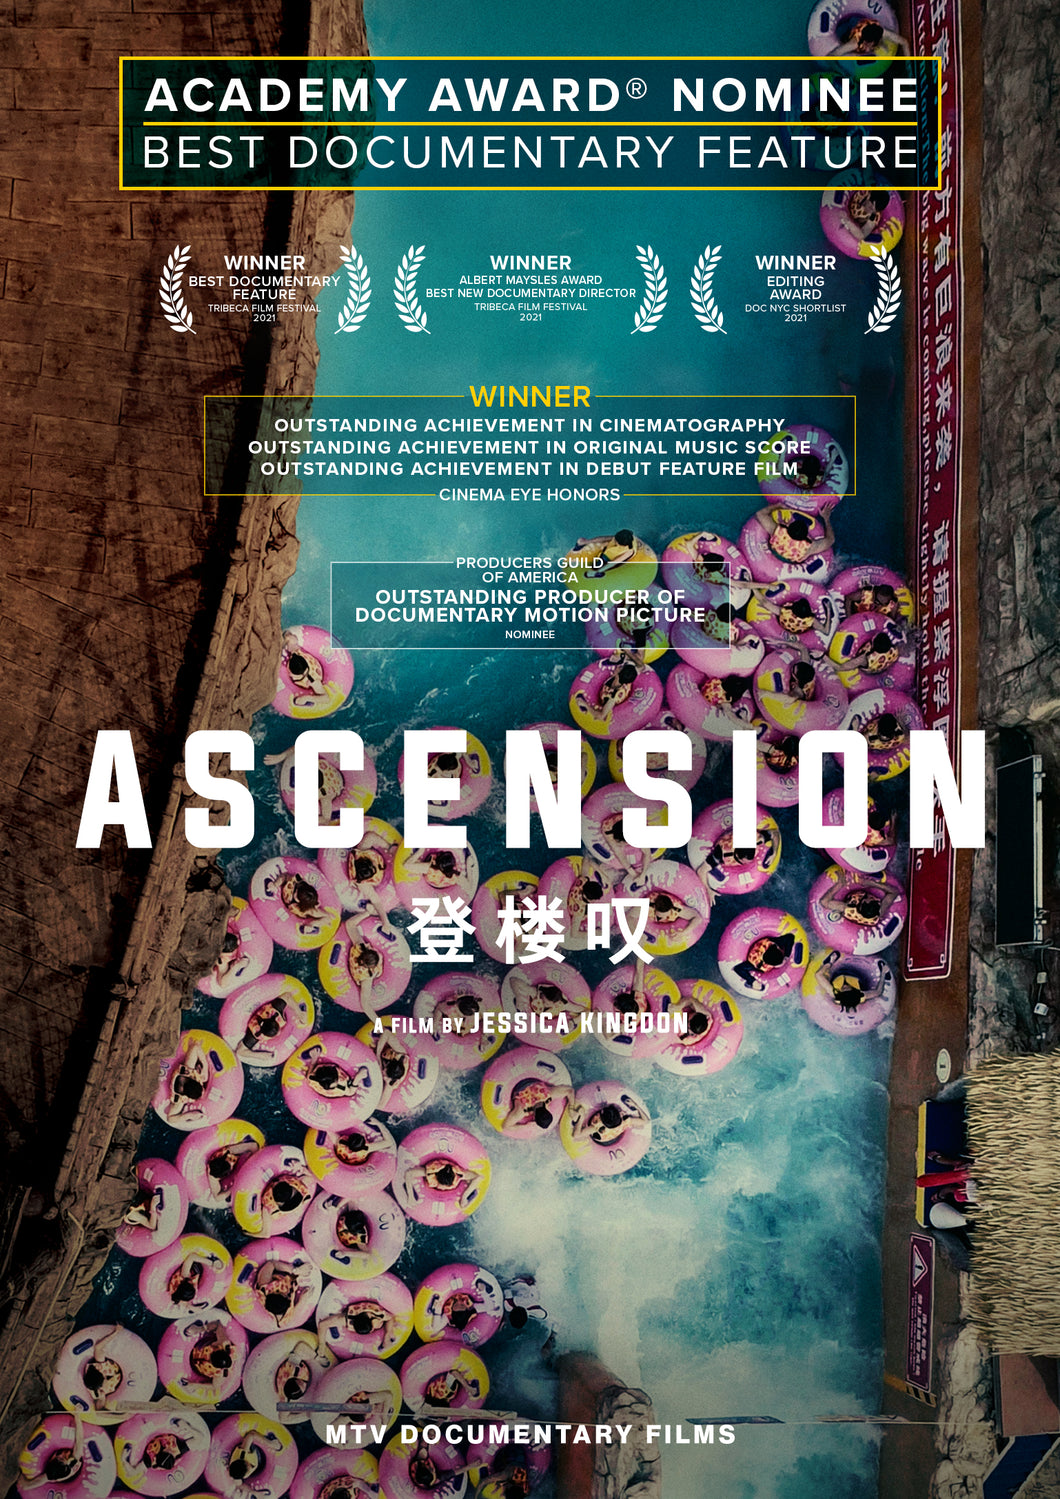 ASCENSION [DVD]